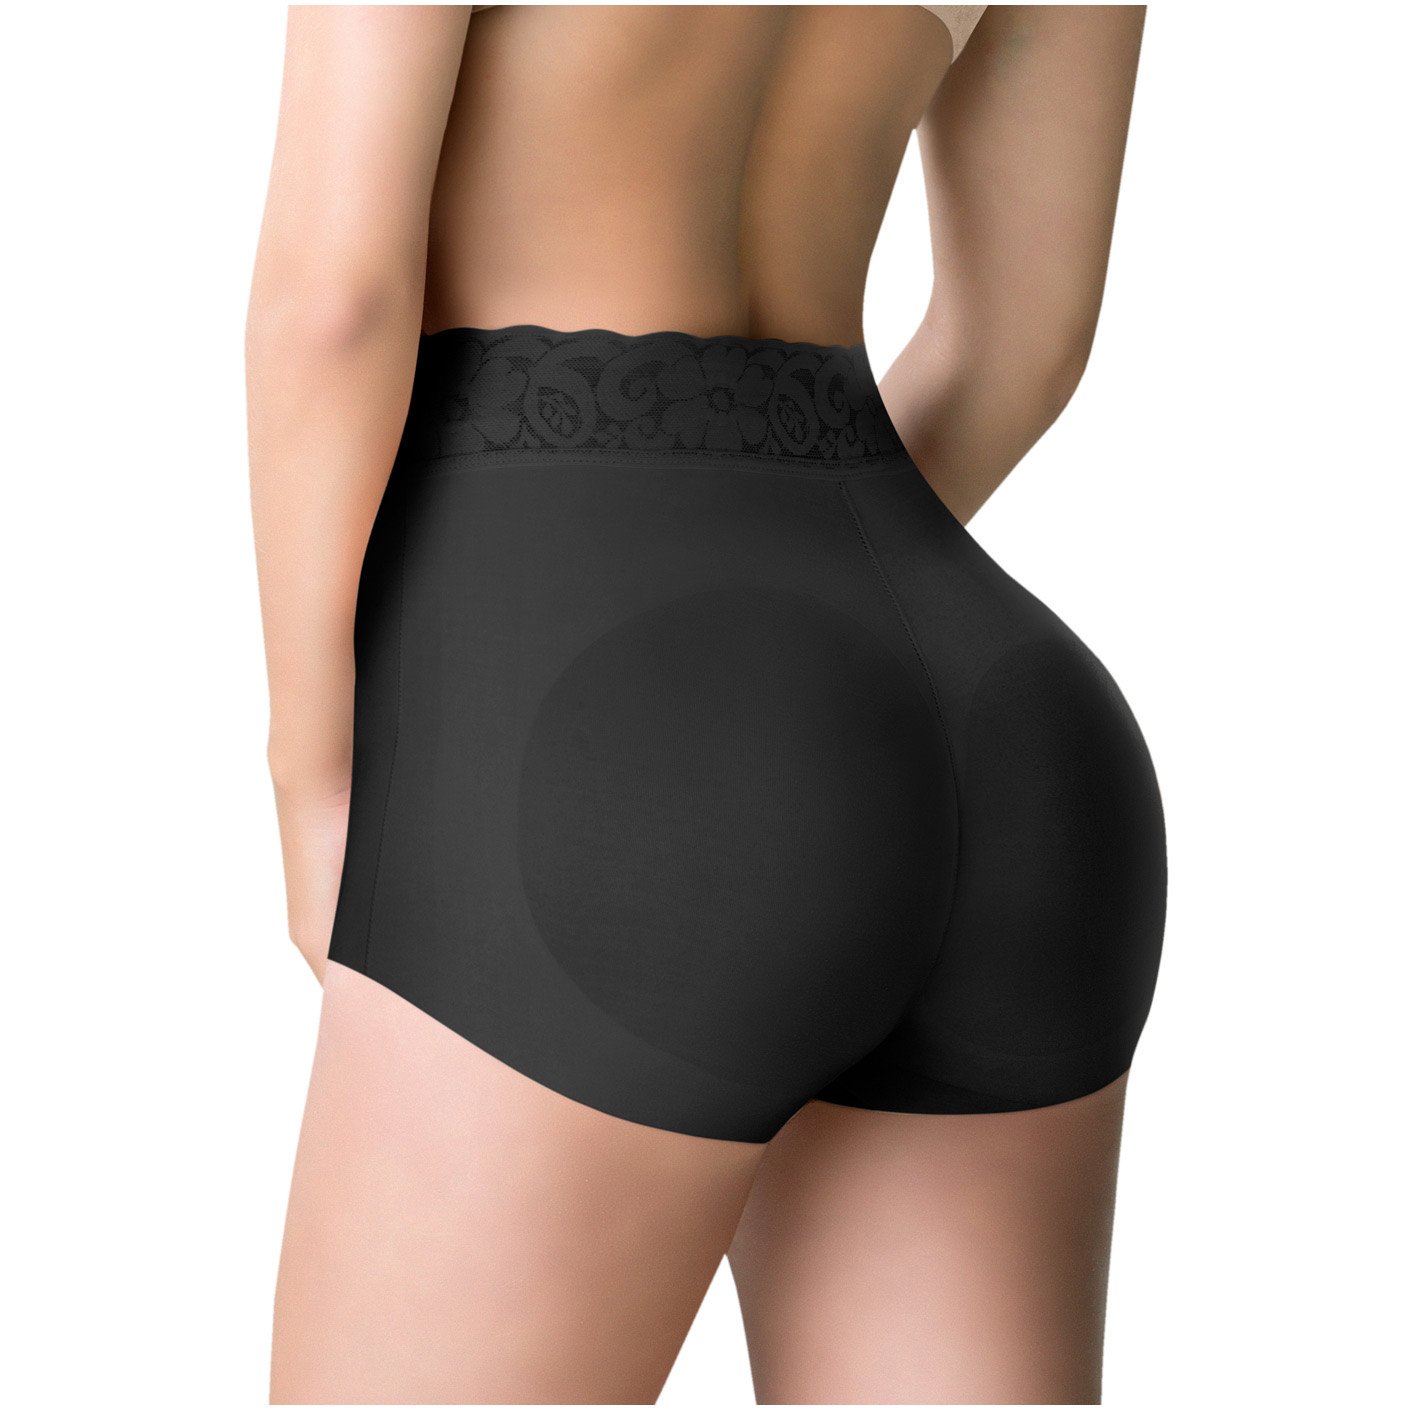 ROMANZA 2036 | Tummy Control High Waisted Panty | Butt Lifter Shapewear - Pal Negocio